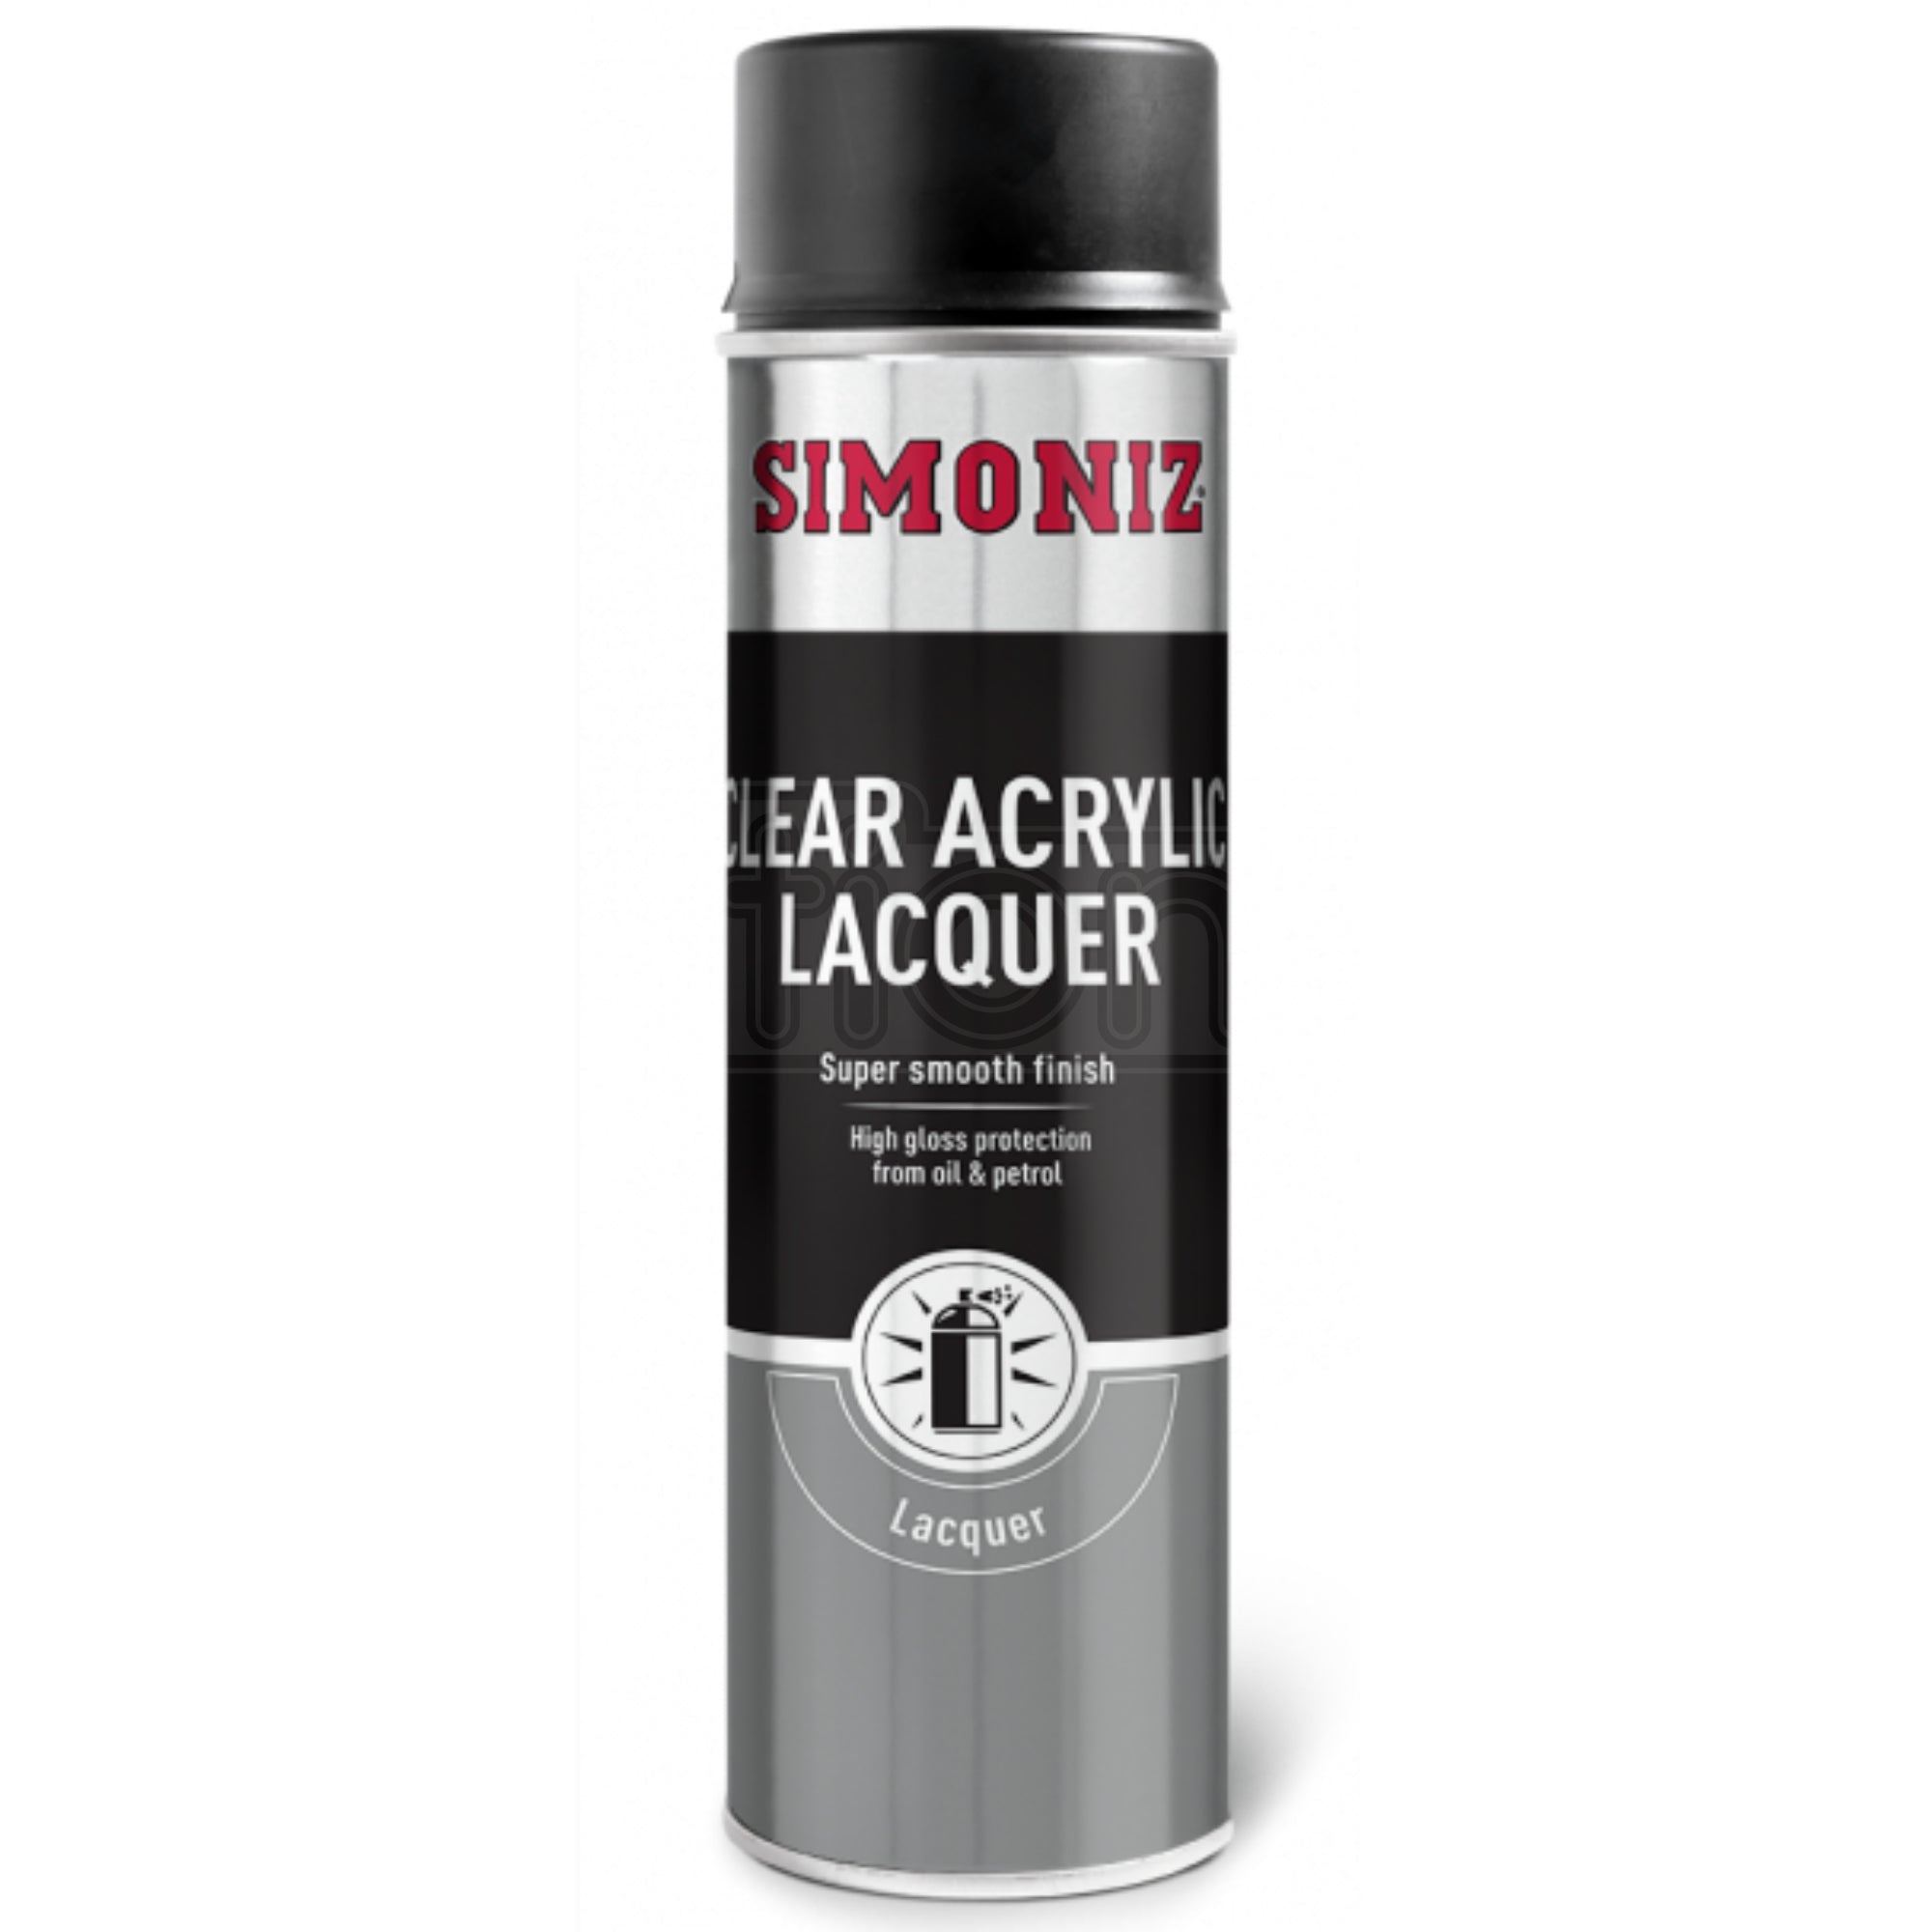 Simoniz Clear Acrylic Lacquer 500ml